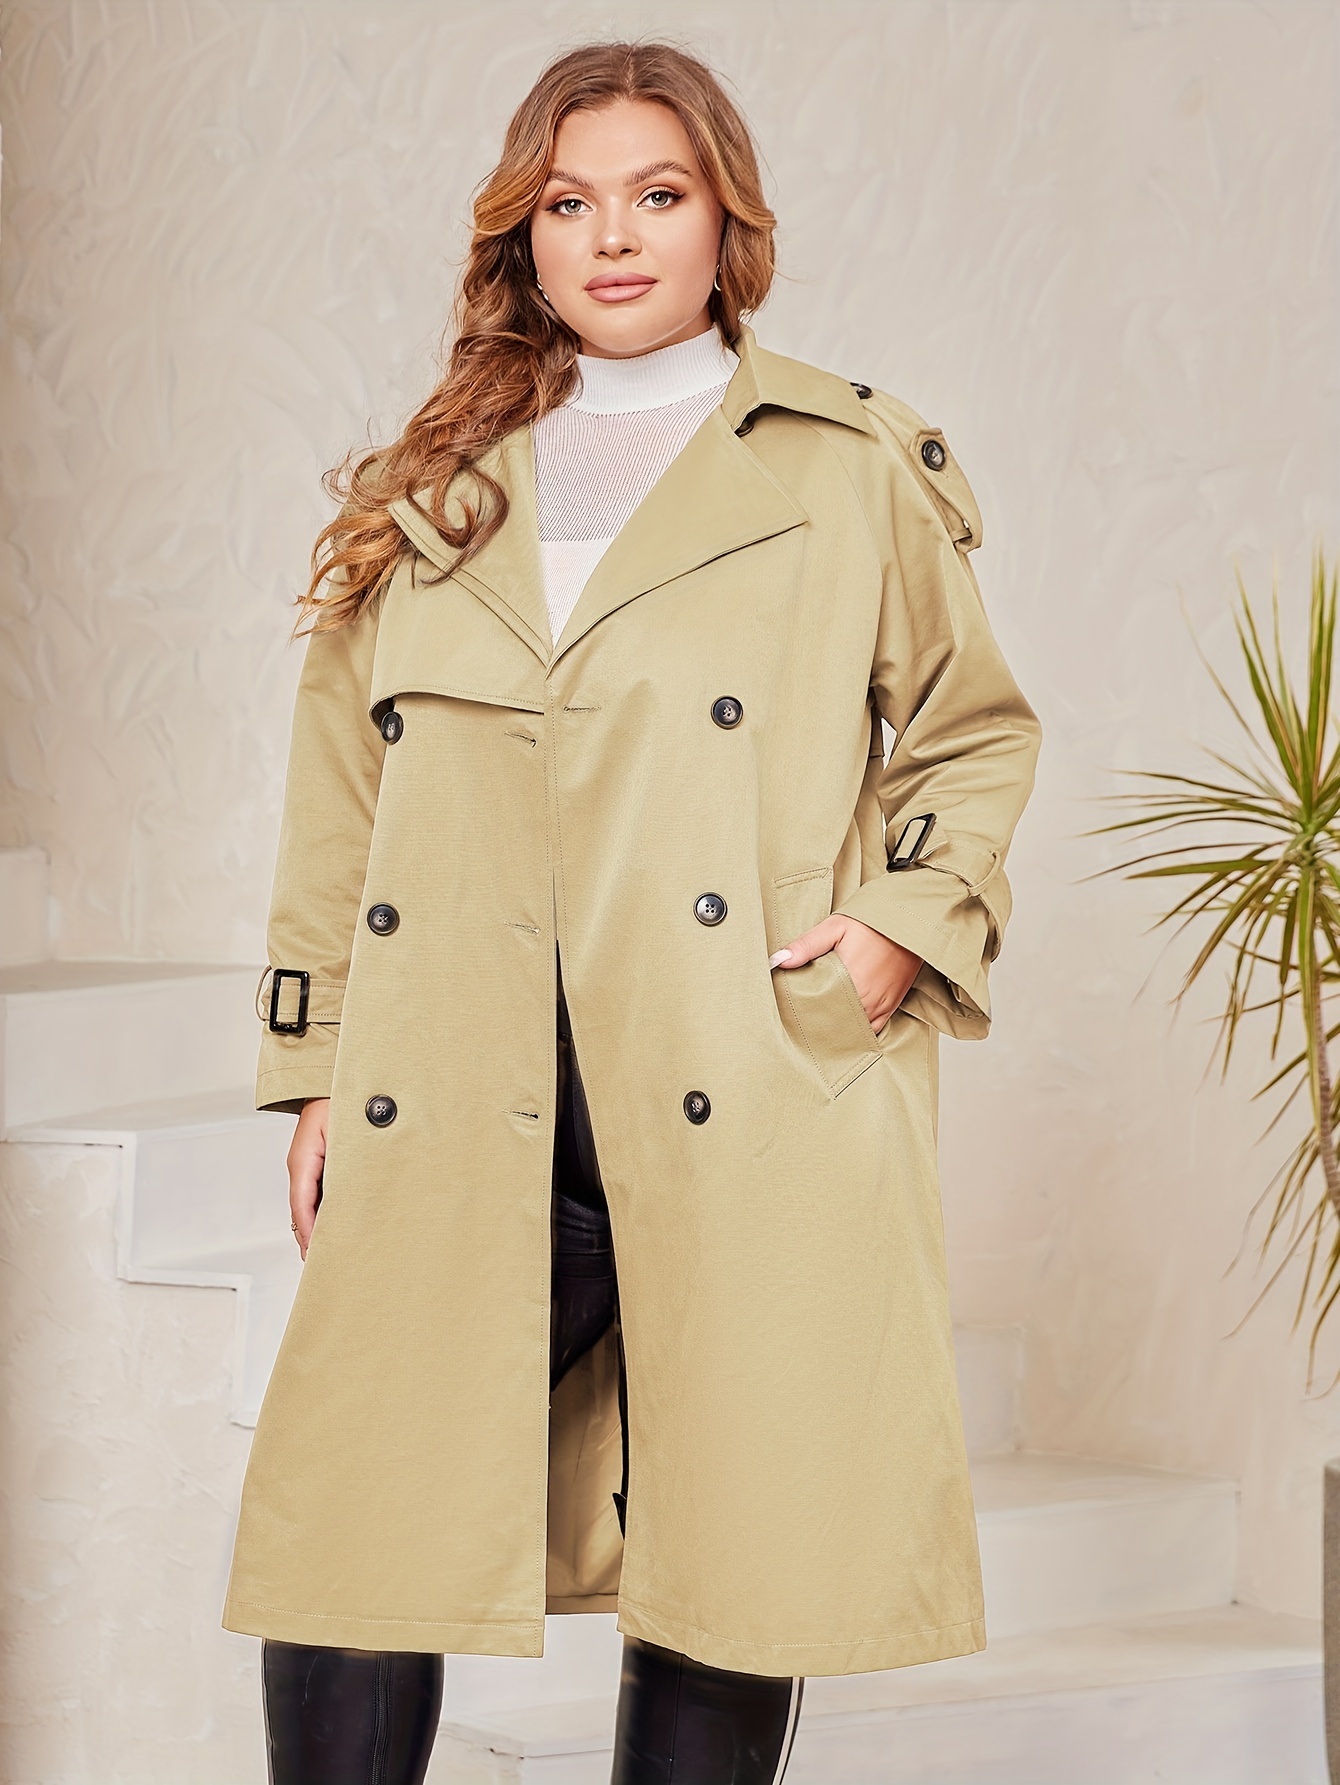 Cappotto donna lana invernale lungo capotto giacca beige taglie